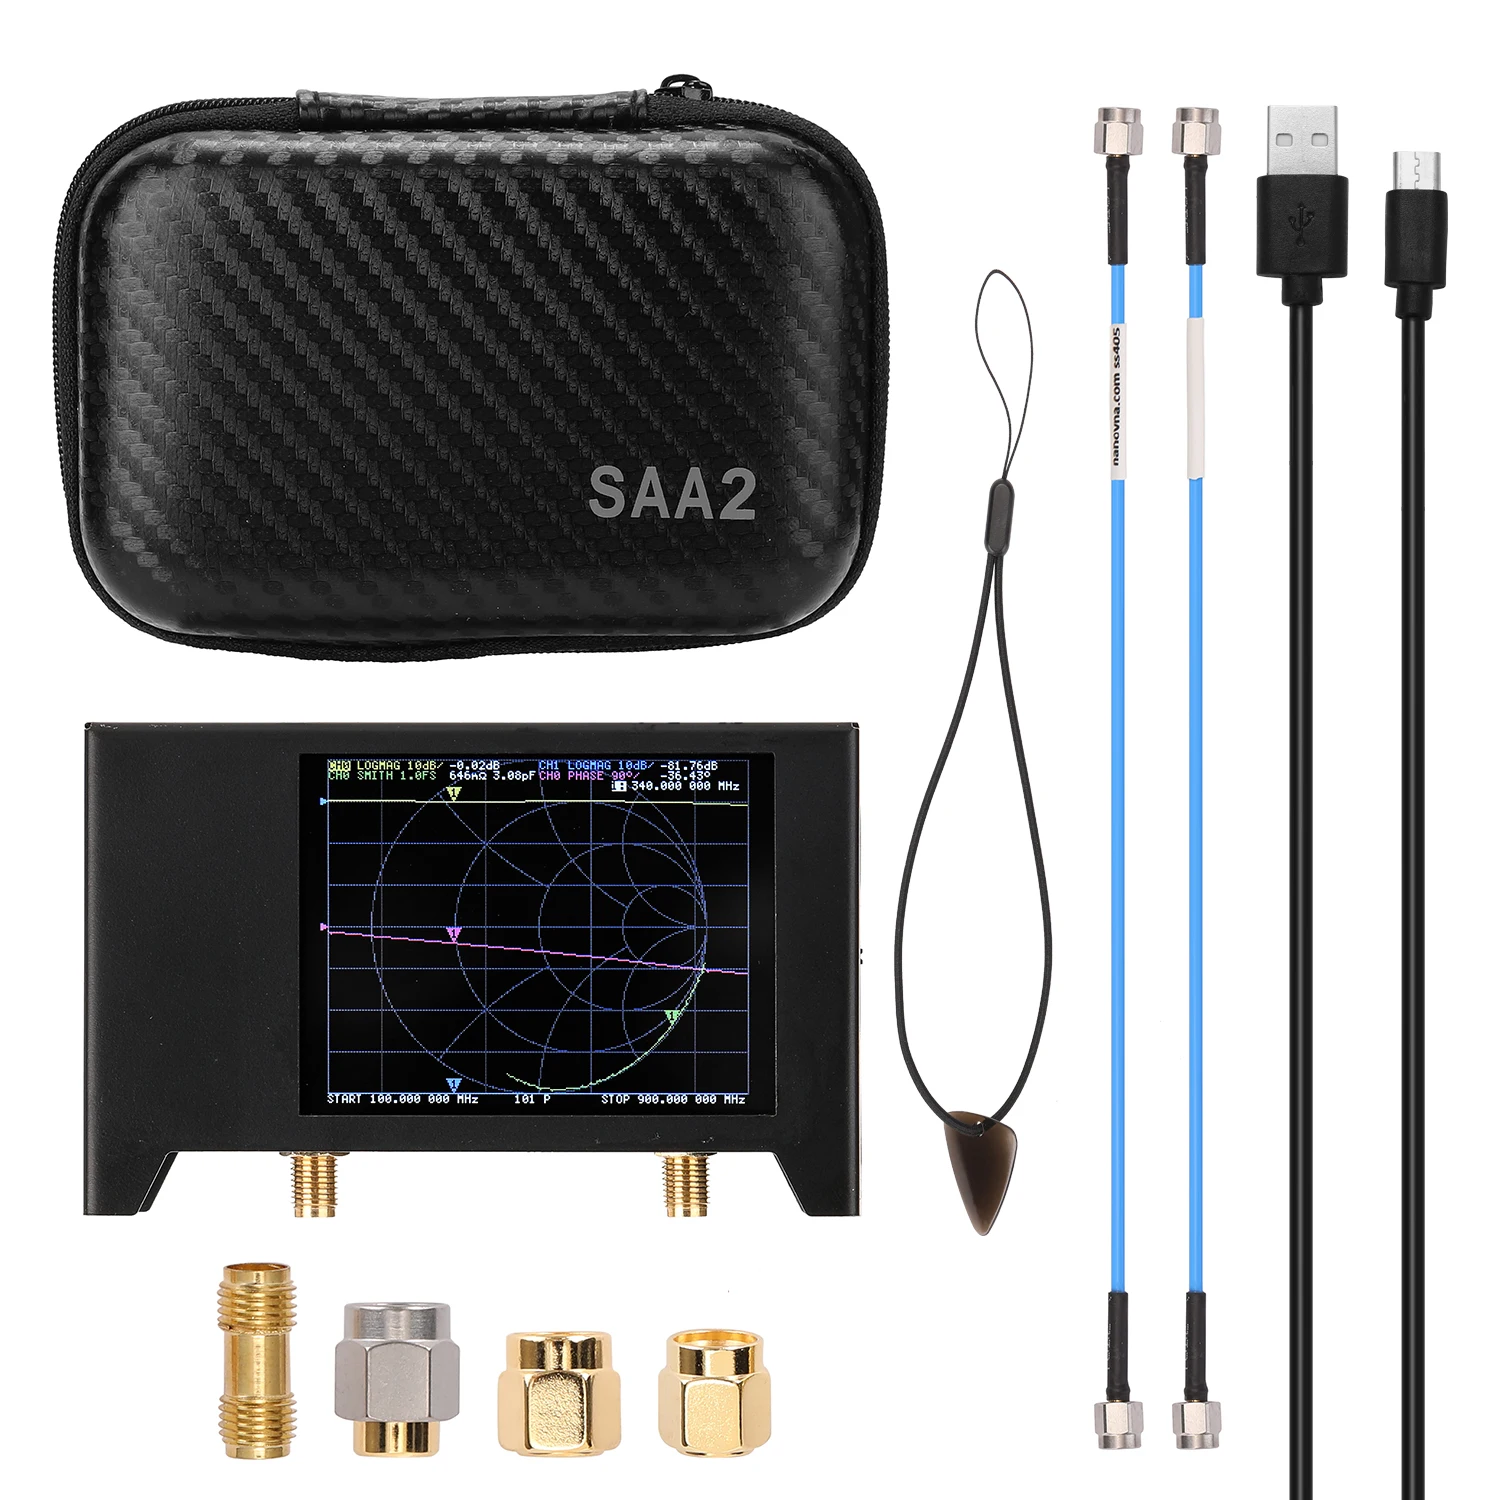 

Векторный сетевой анализатор, 3г, S-A-A-2 NanoVNA V2, 2,8 дюйма, экранный антенный анализатор, коротковолновый HF VHF UHF с железным корпусом